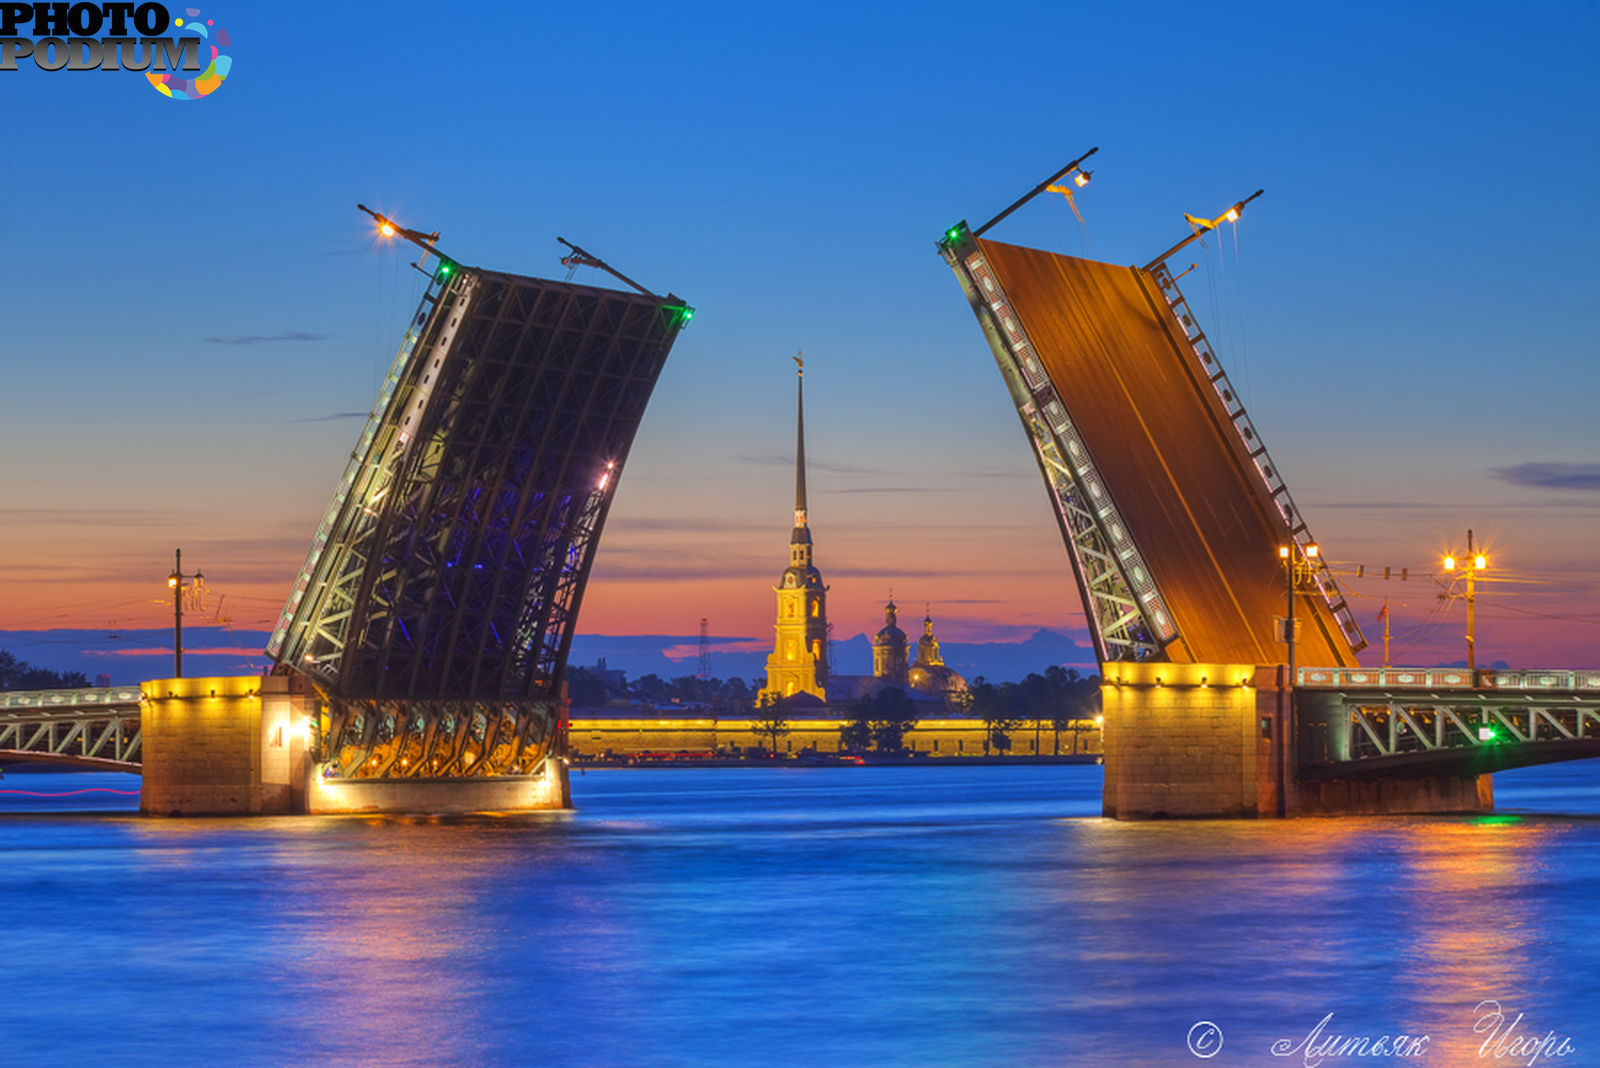 все мосты санкт петербурга с названиями